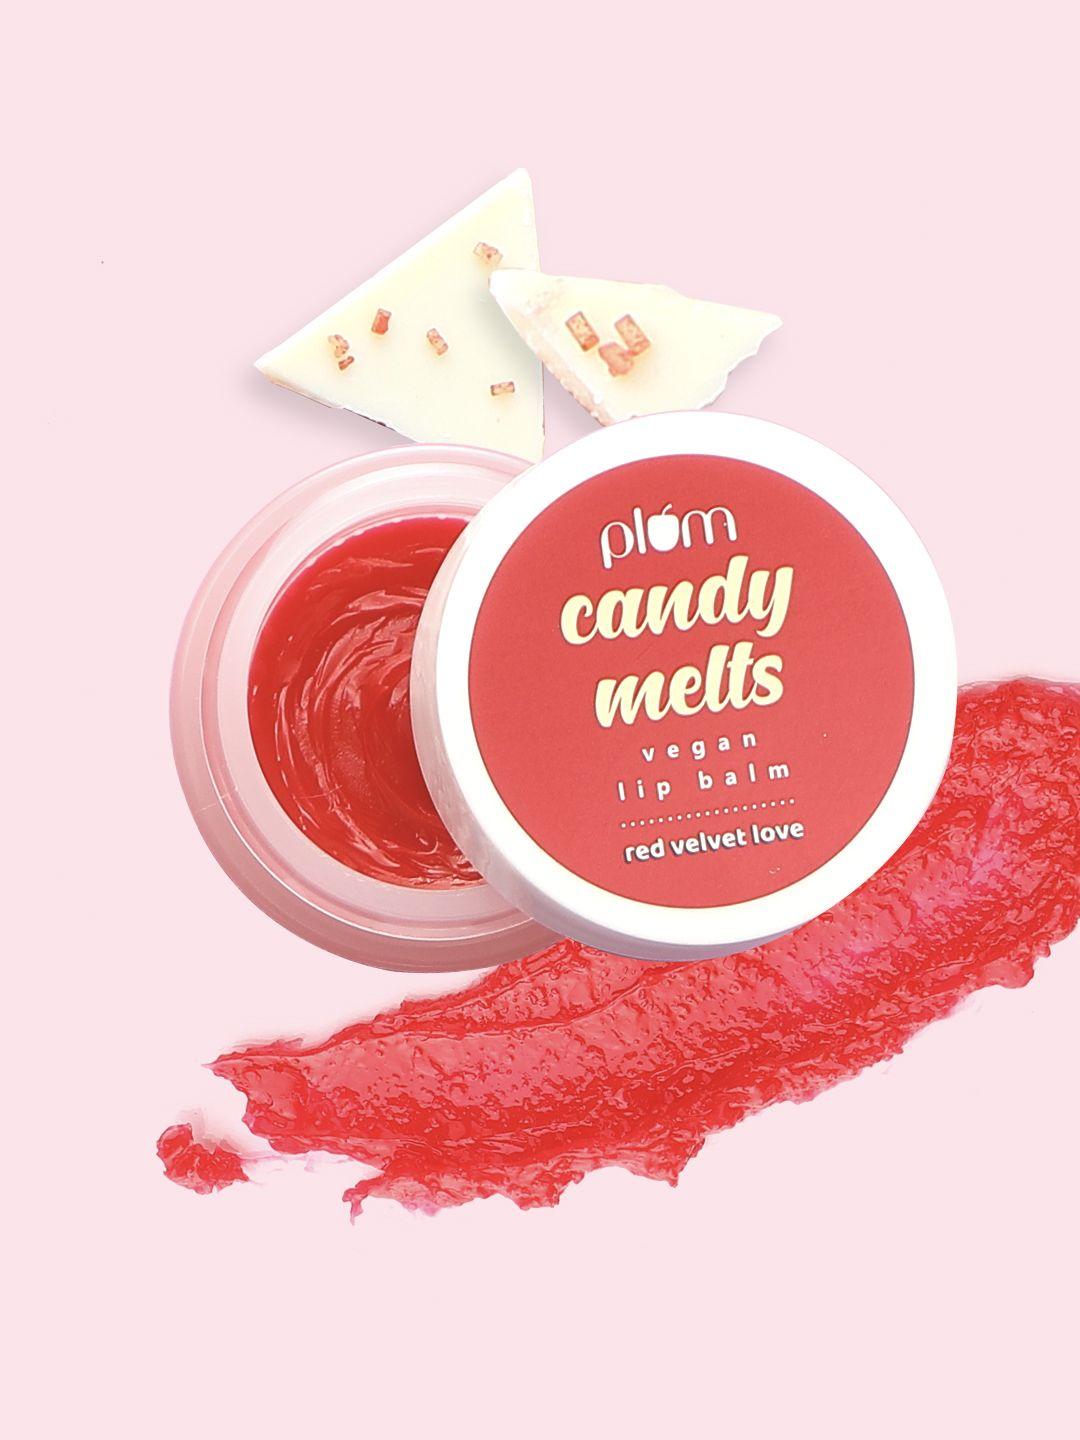 plum candy melts vegan lip balm - red velvet love - 12 g